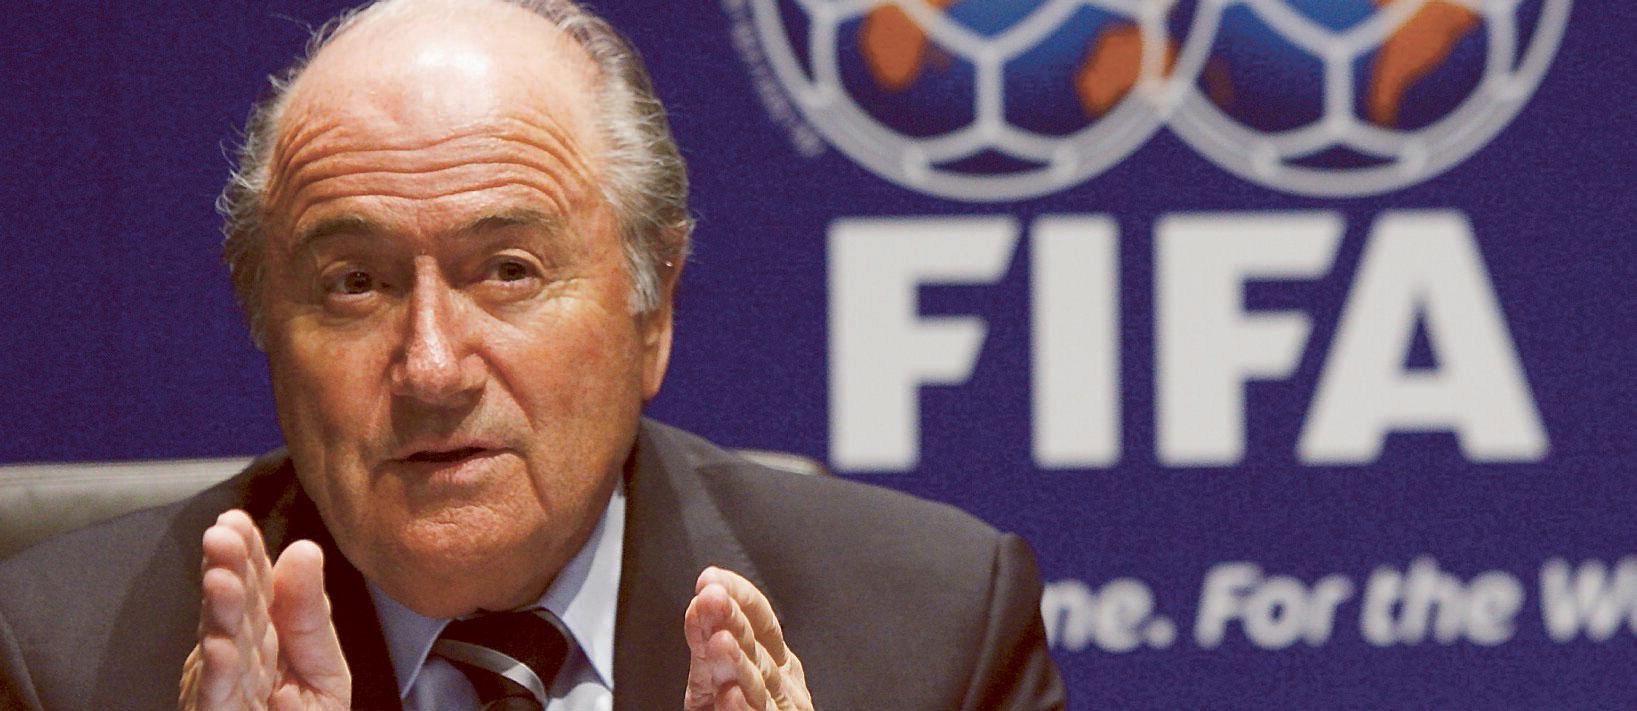 ingen ursäkt Fifapresidenten Sepp Blatter tar inte tillbaka sitt uttalande.